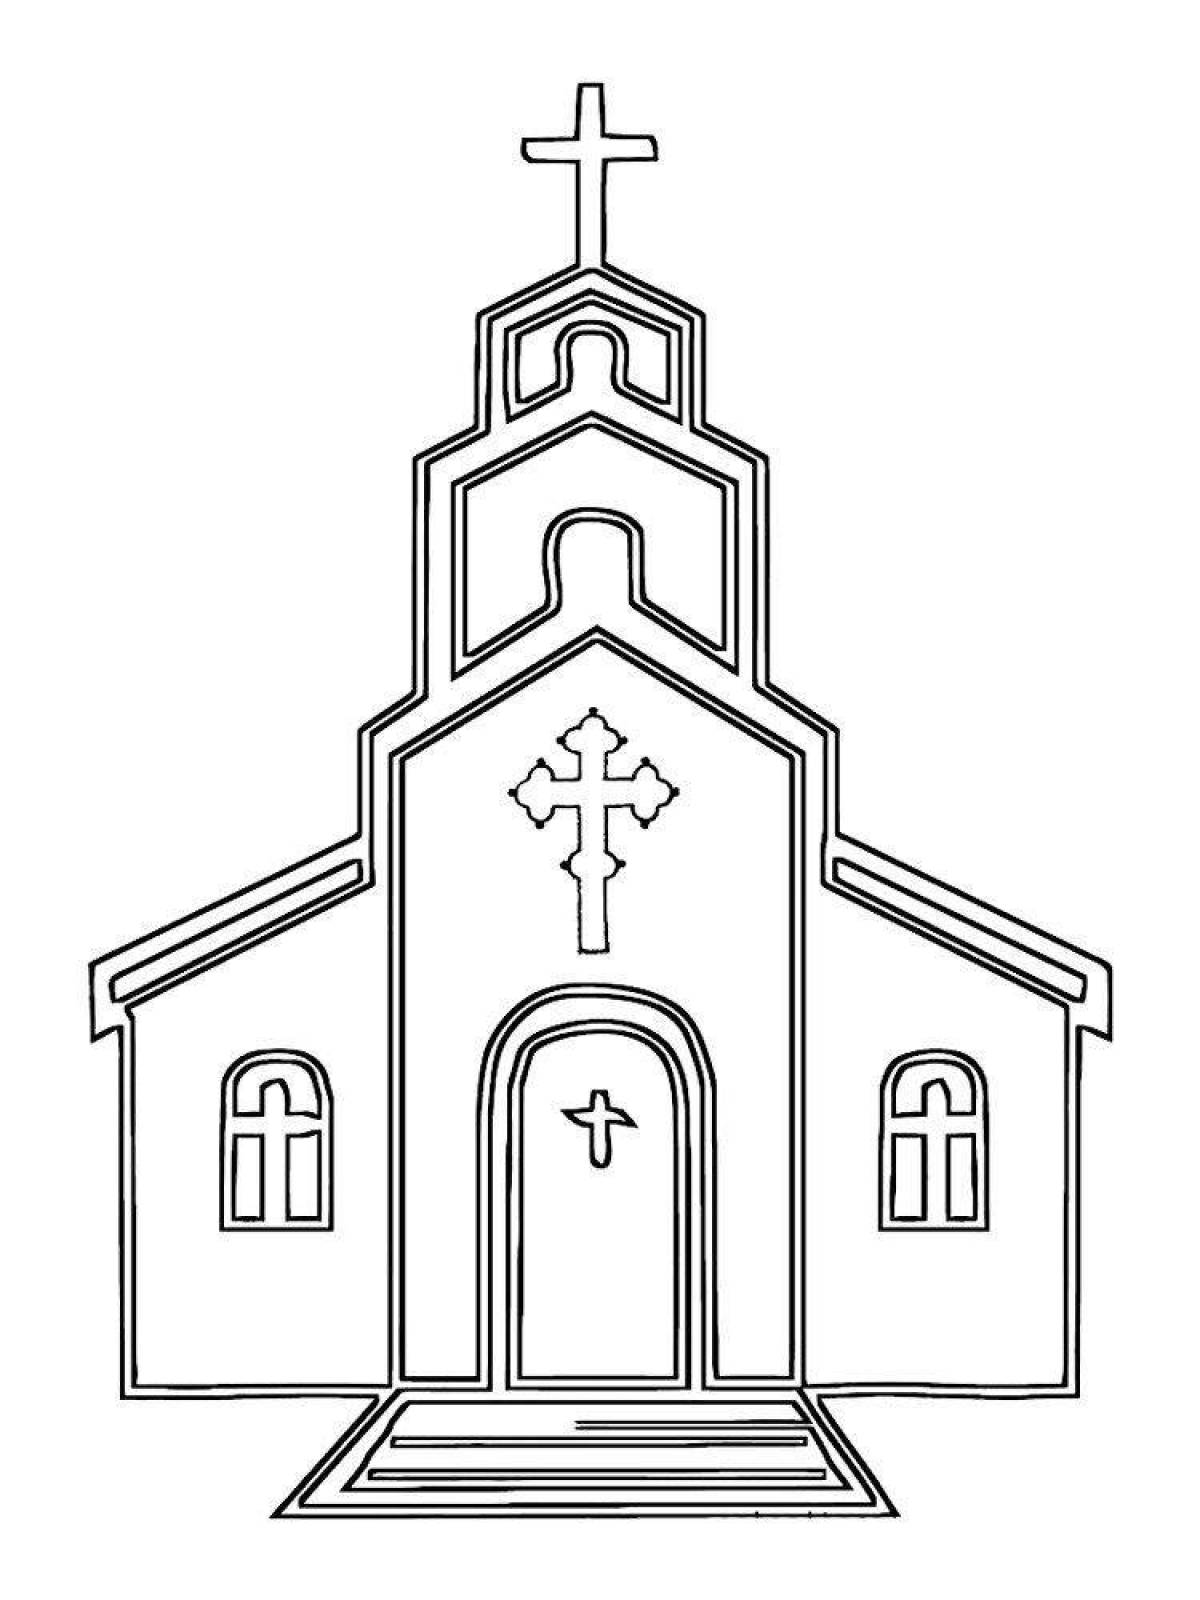 Drawing of a shining church